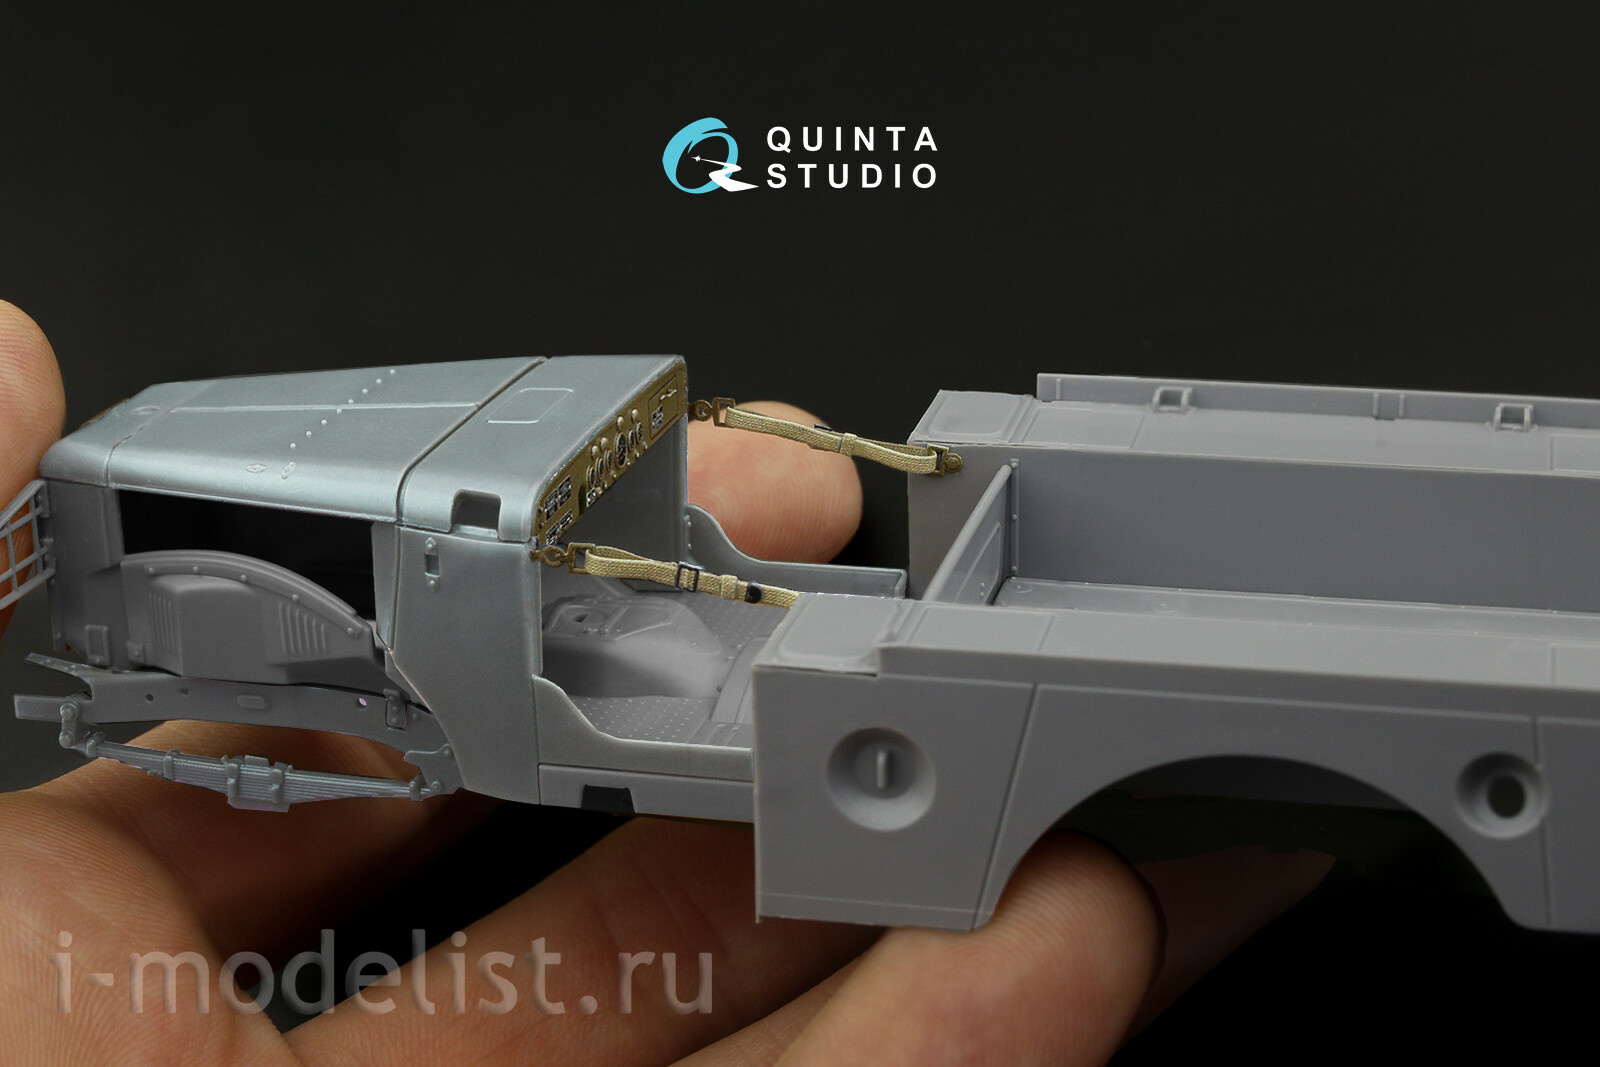 QD35062 Quinta Studio 1/35 3D Декаль интерьера кабины для модели фирмы Звезда, 